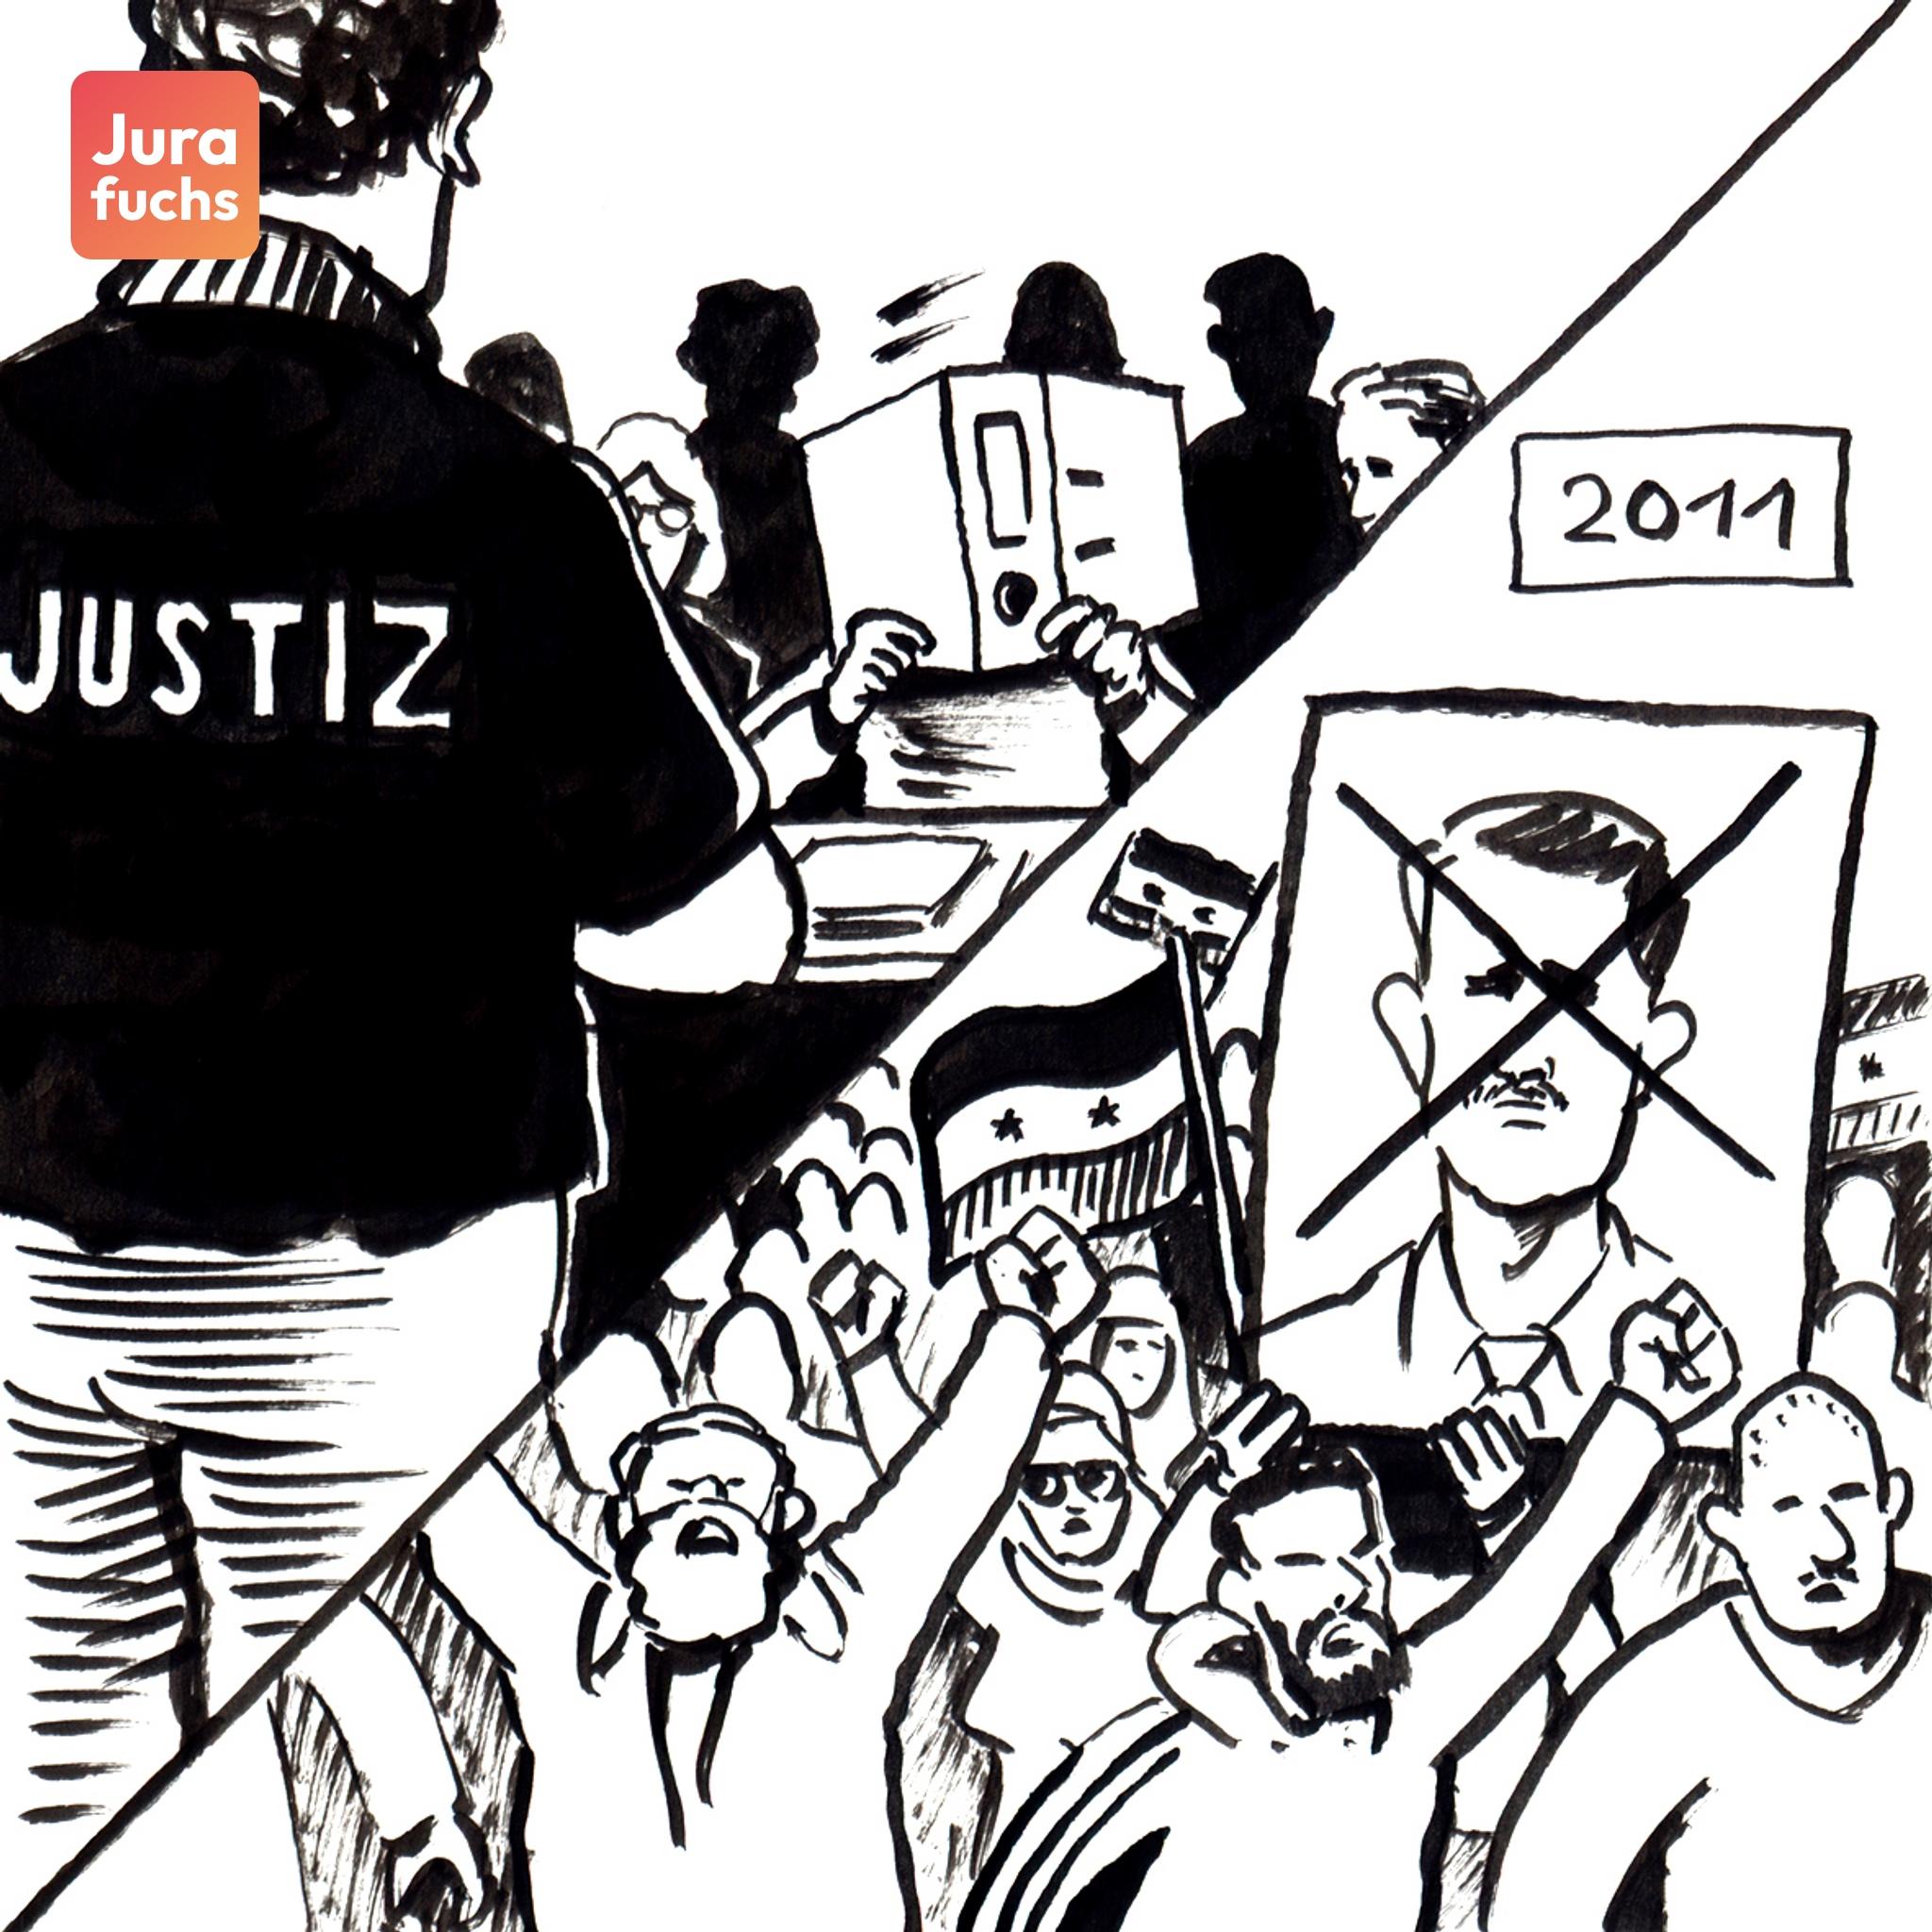 Jurafuchs Illustration: Das Bild zeigt links einen Gerichtsprozess in Deutschland und rechts Proteste gegen den syrischen Machthaber Assad 2011